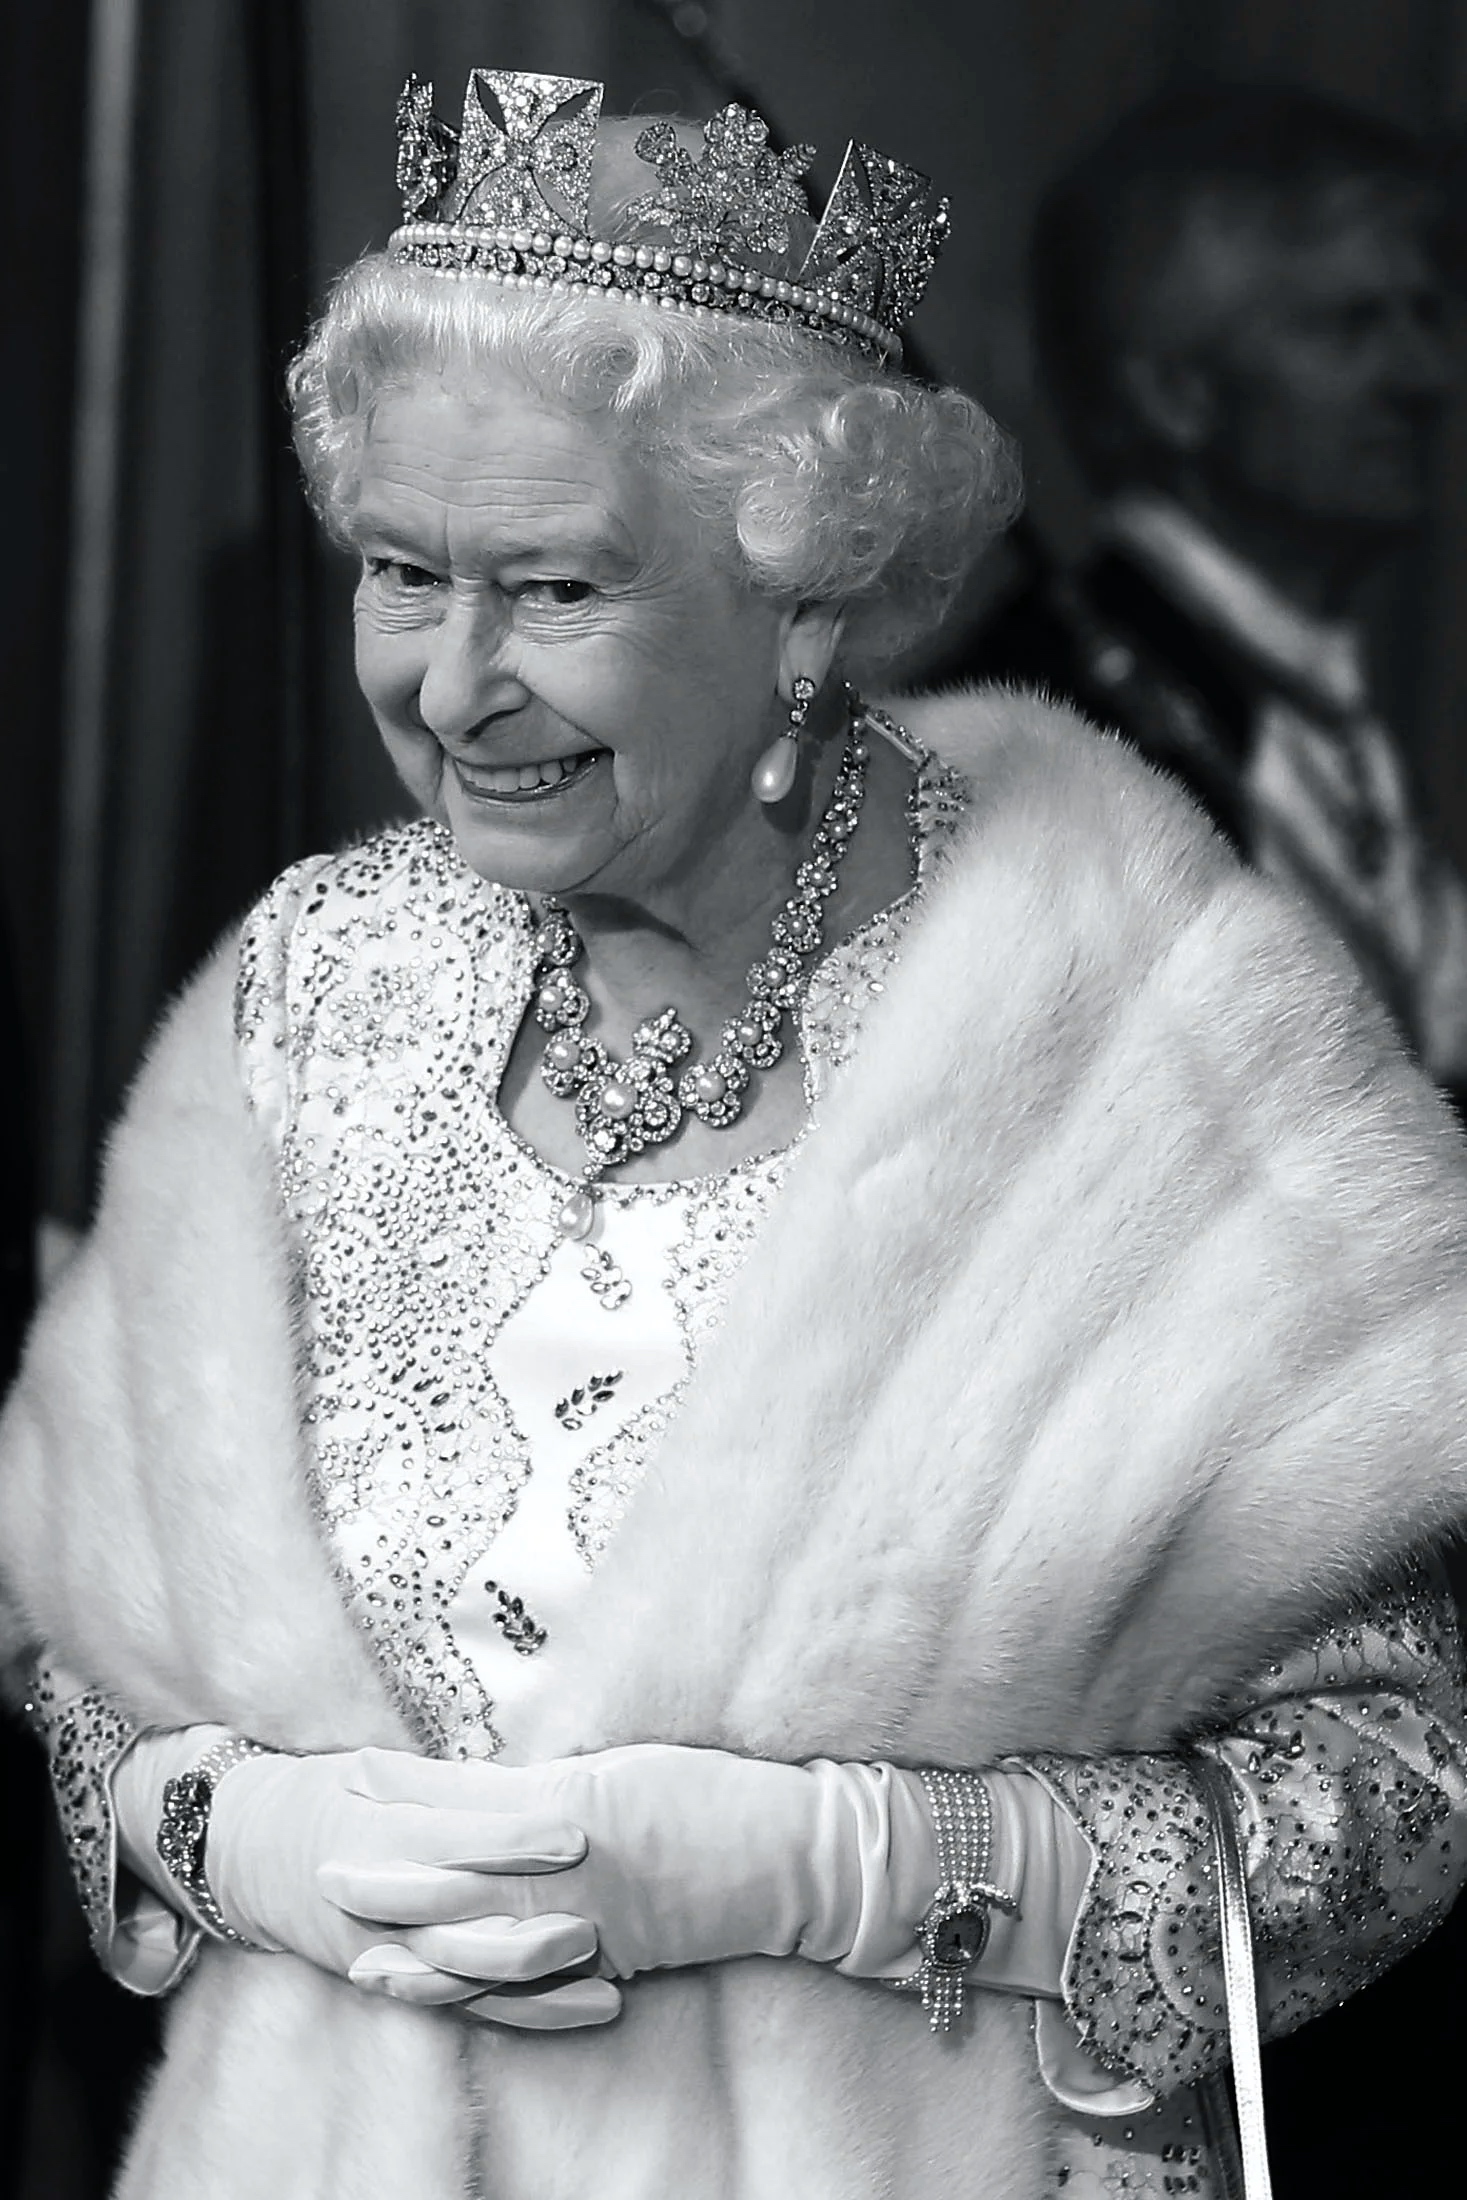 イギリスのエリザベス2世女王陛下を偲ぶ時計コレクションの数々